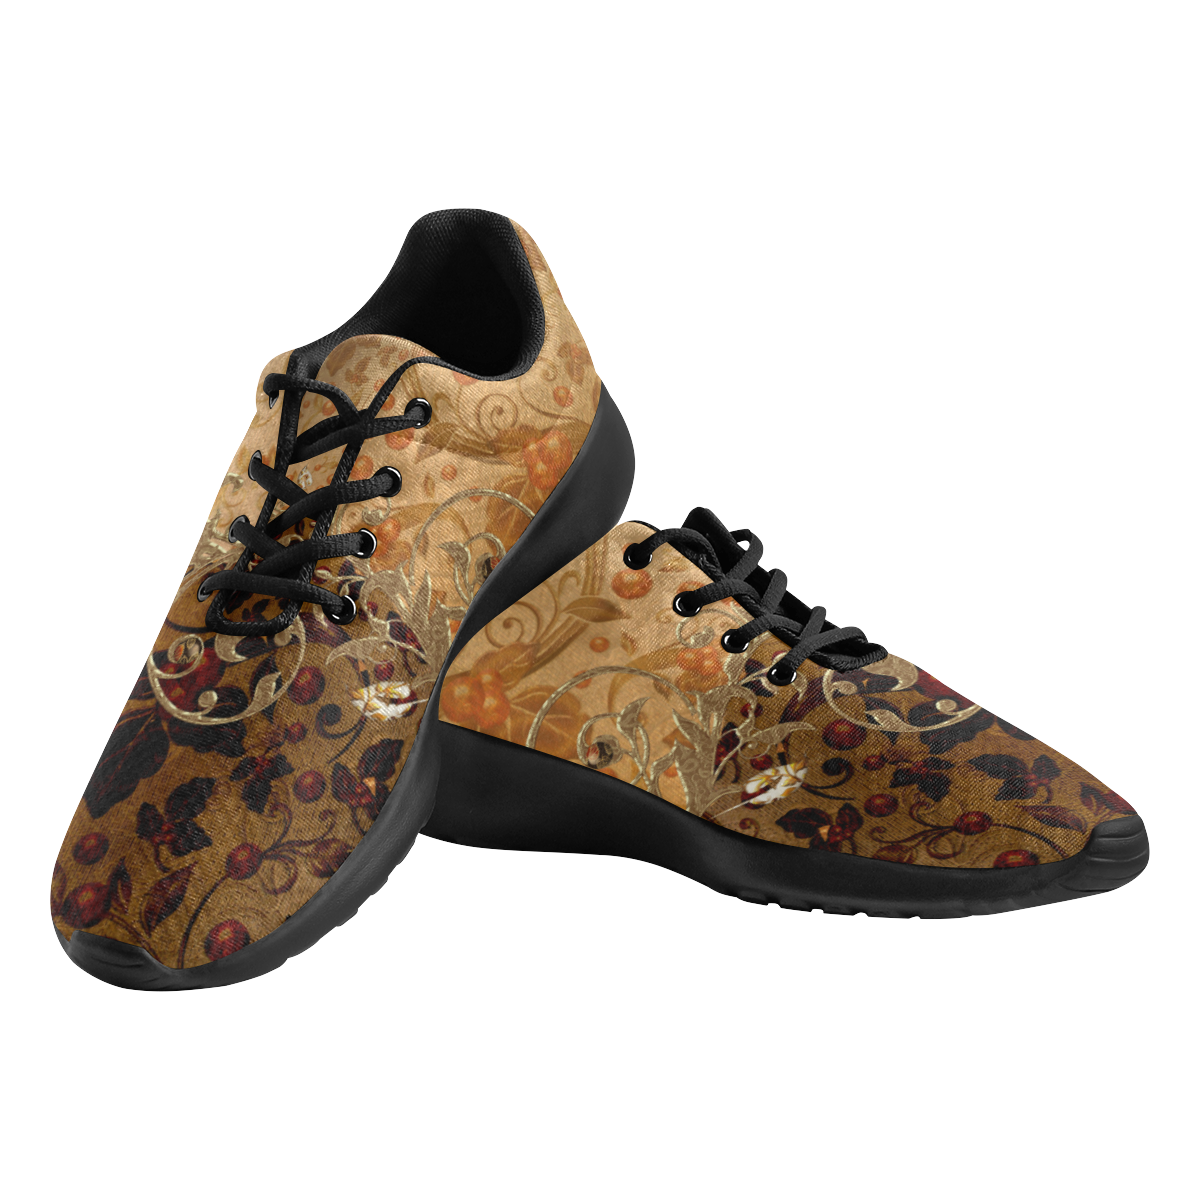 Wonderful decorative floral design Men's Athletic Shoes (Model 0200)